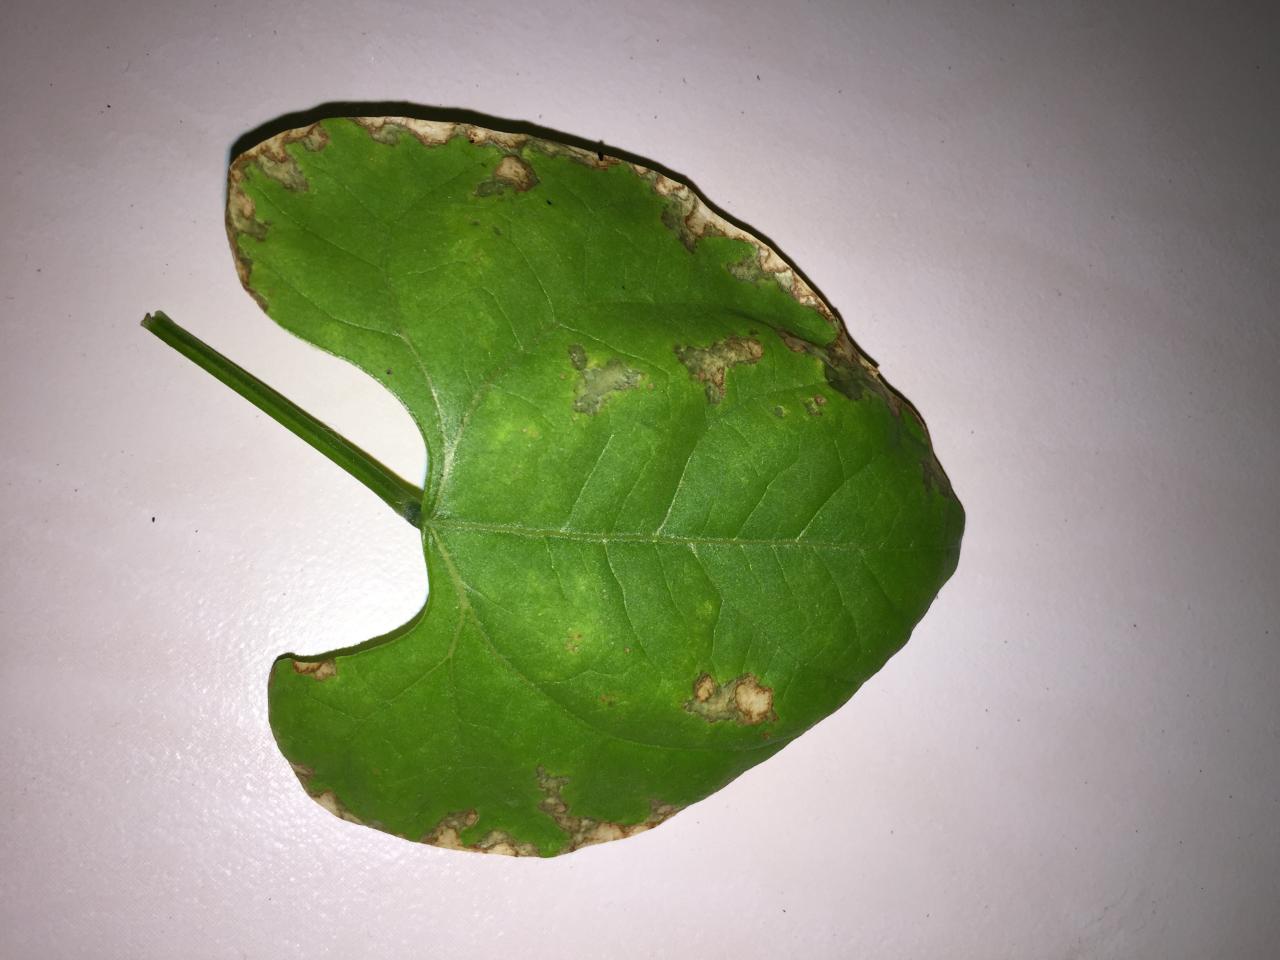 Bentuk daun kacang hijau